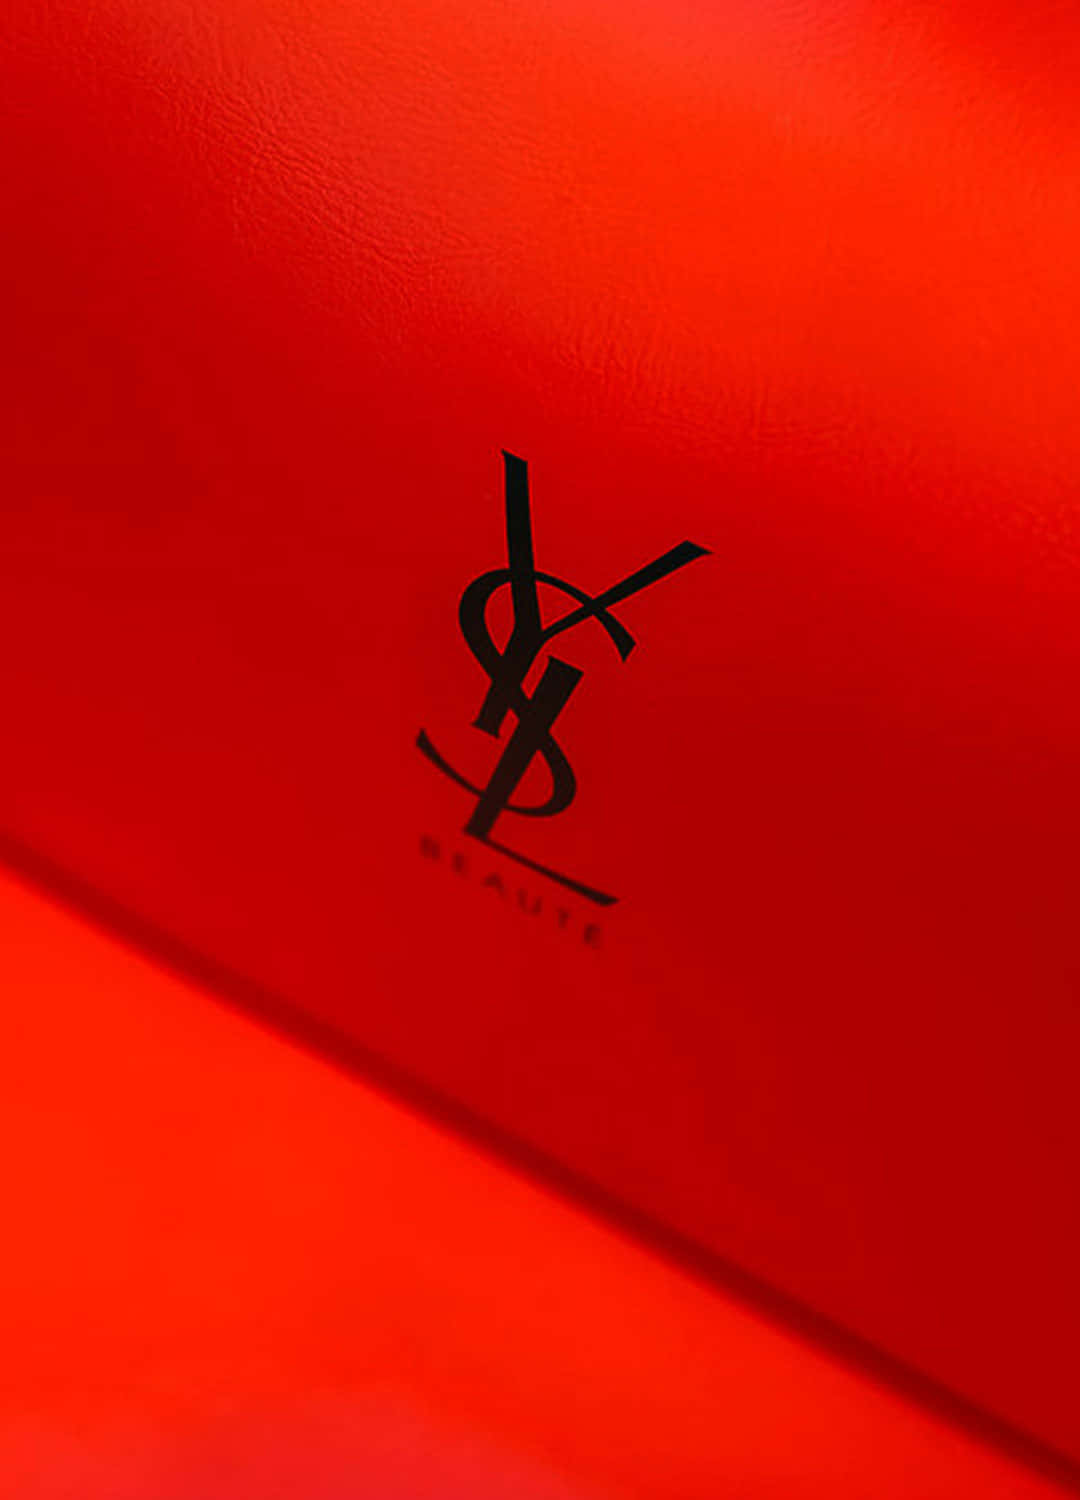 Dasikonische Yves Saint Laurent Insignia, Das Modengeschichte Schreibt.